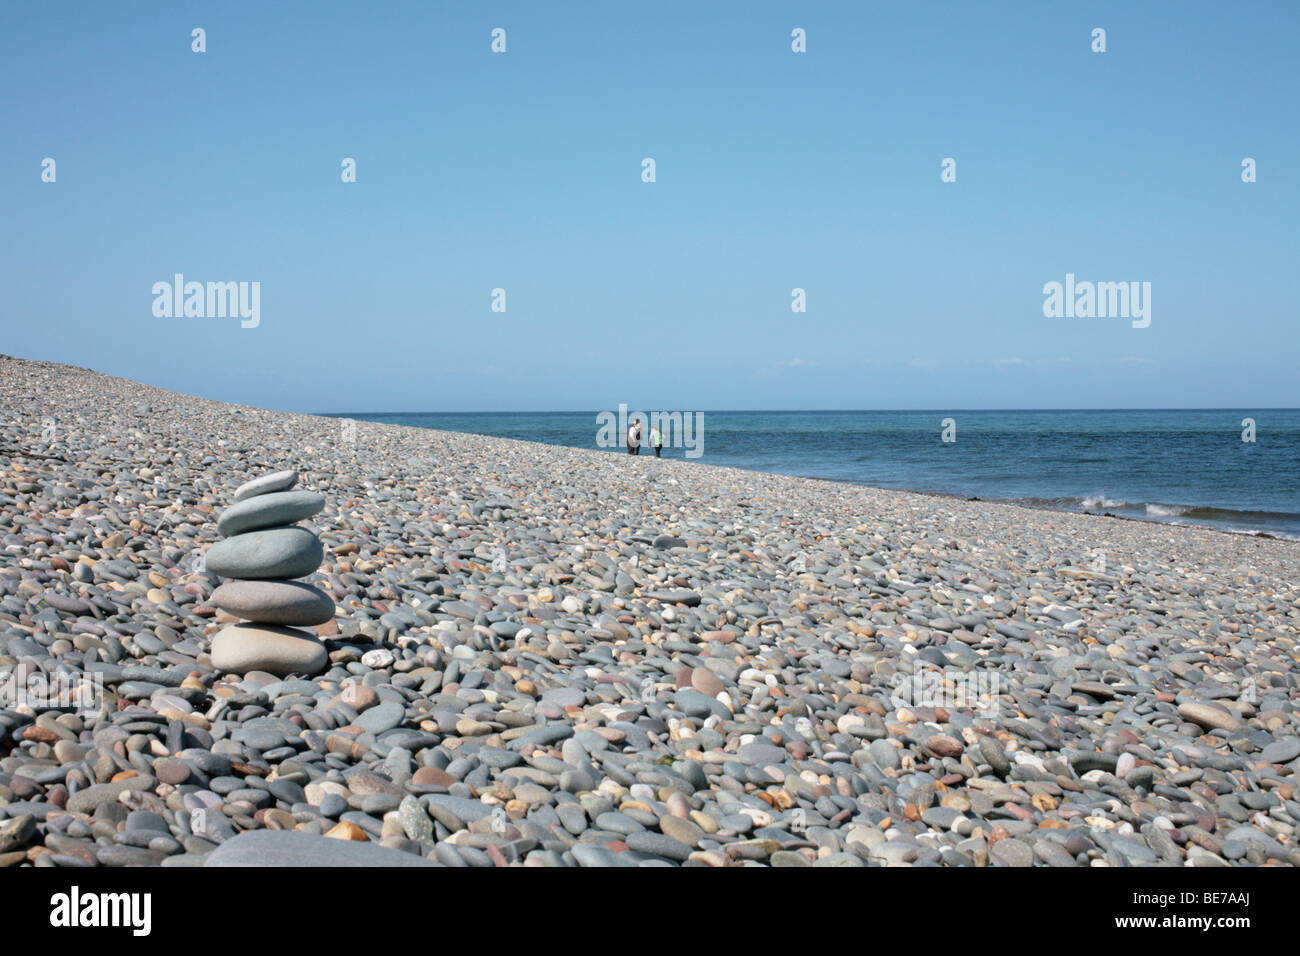 Pila de cinco piedras en el primer plano de una enorme playa de guijarros con tres figuras distantes Foto de stock